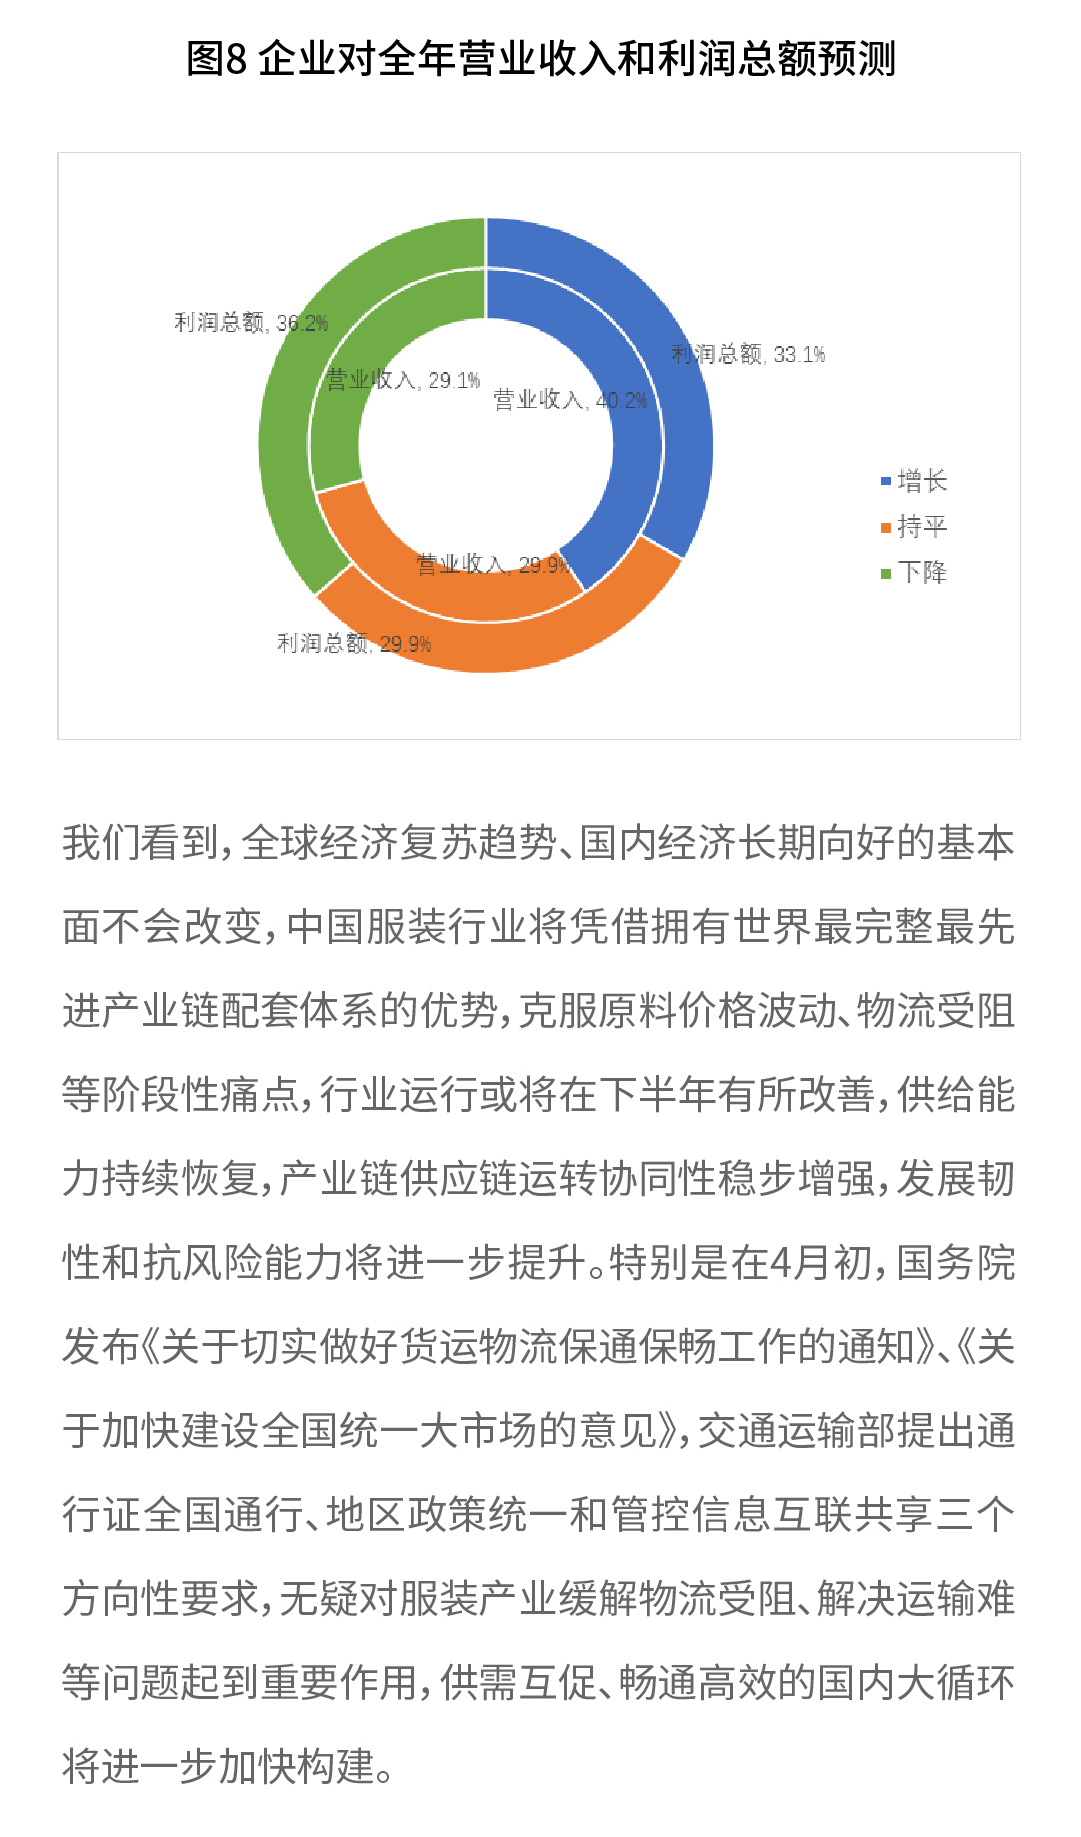 2022年春季中国服装行业运行情况-03_04.jpg